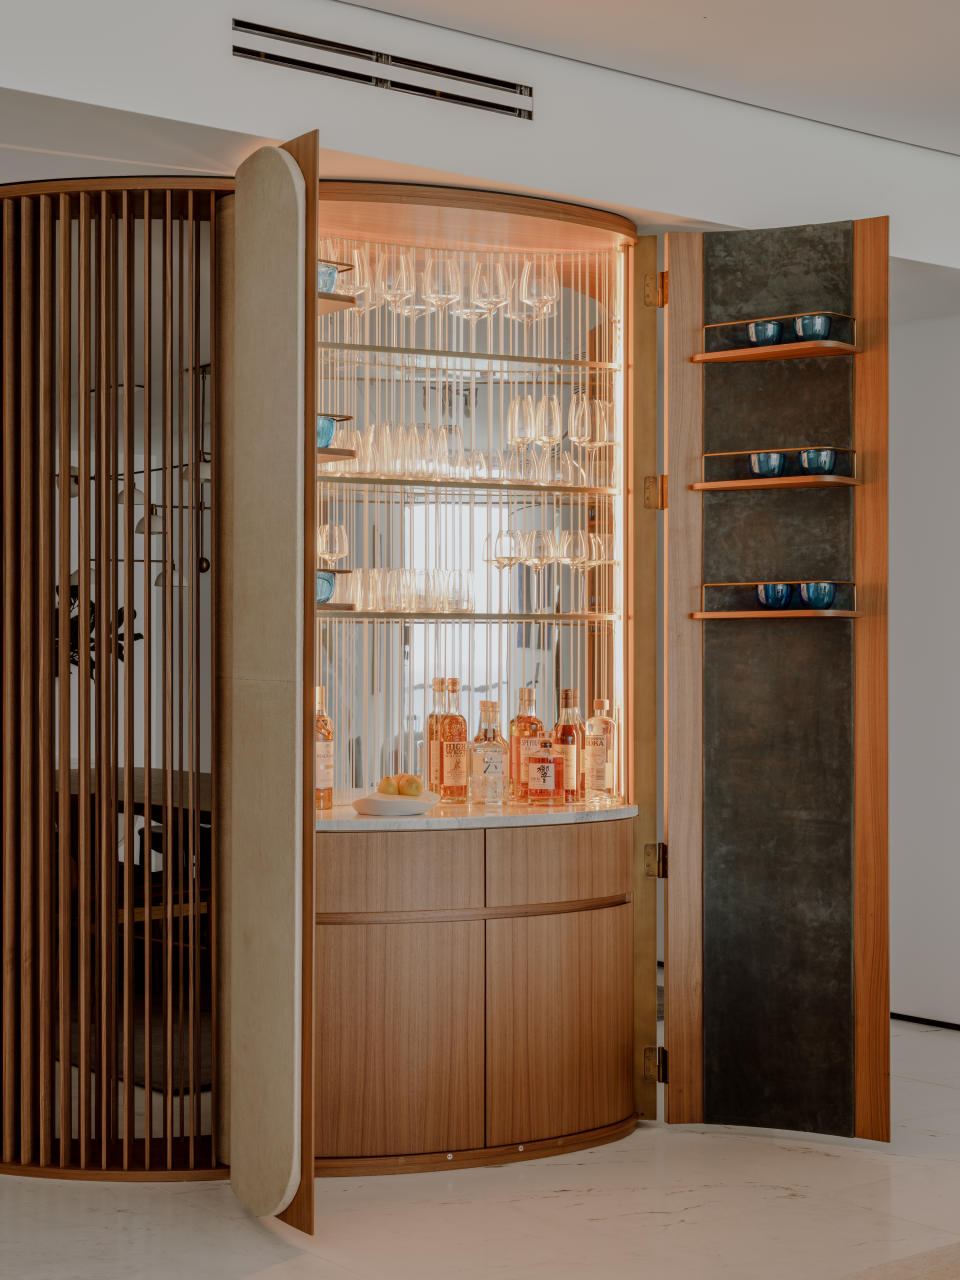 A bar cabinet hidden inside a wooden wall